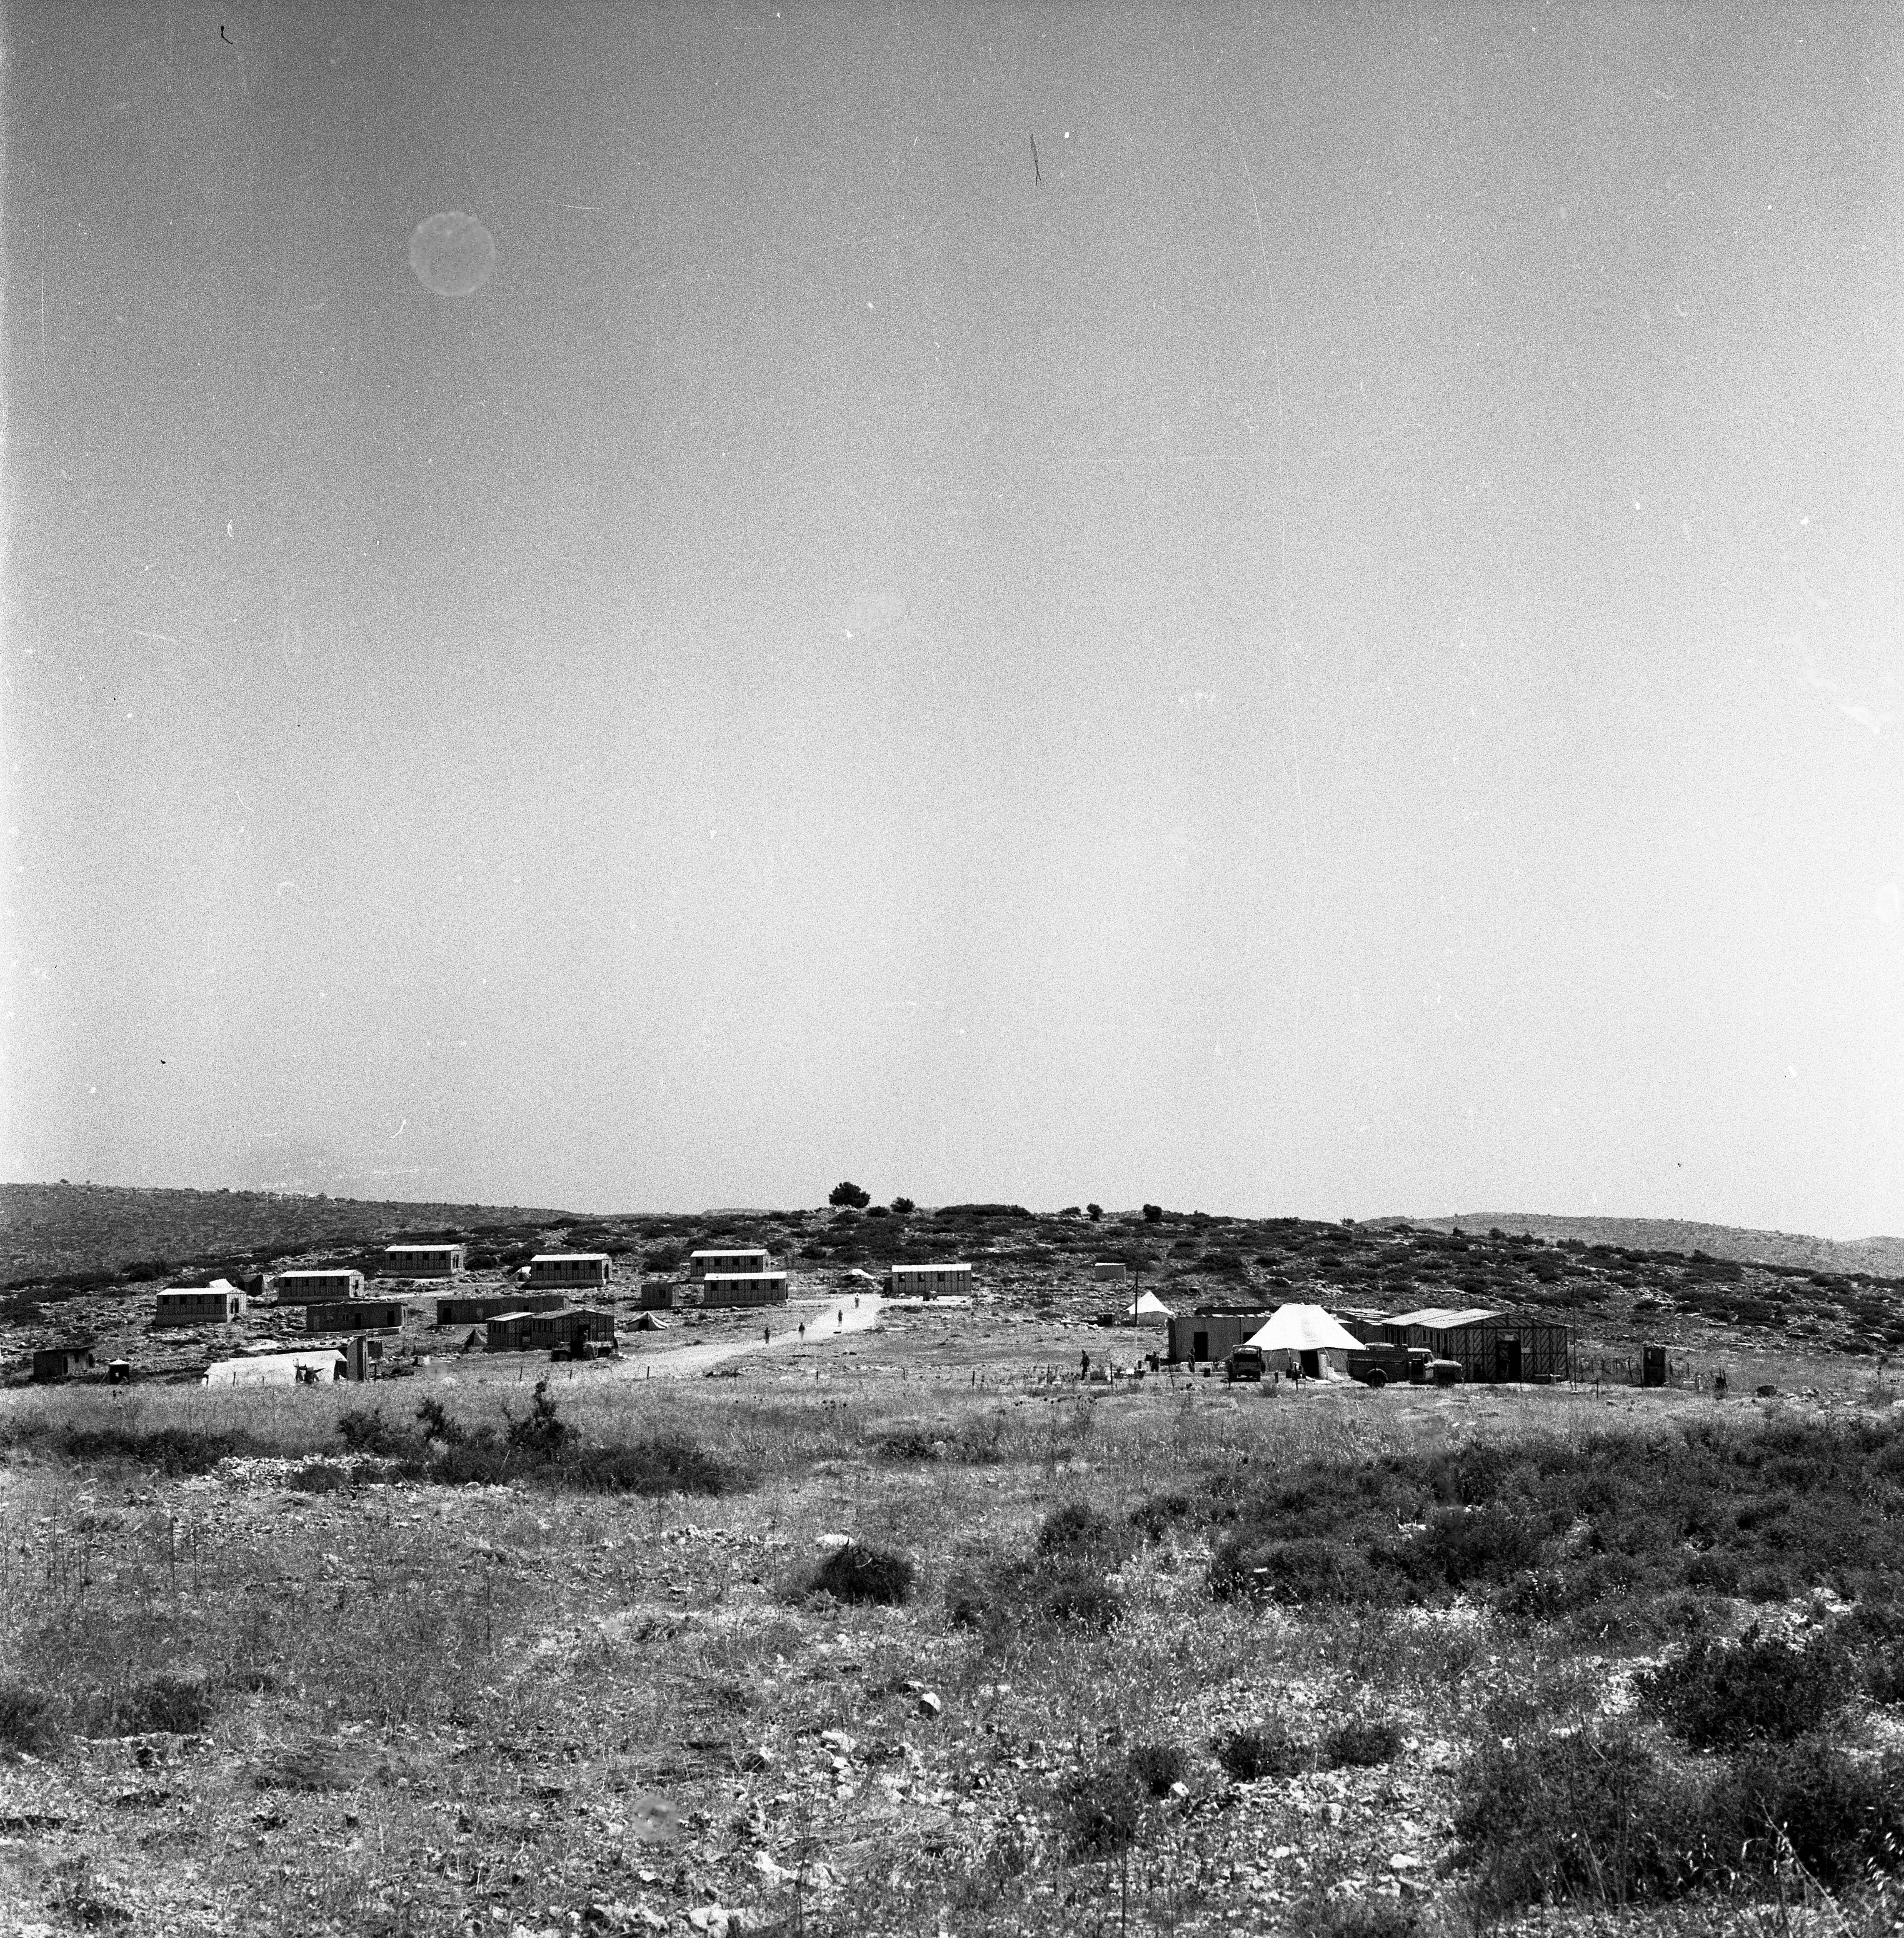  מחנה צה"ל בגדה המערבית; 1968